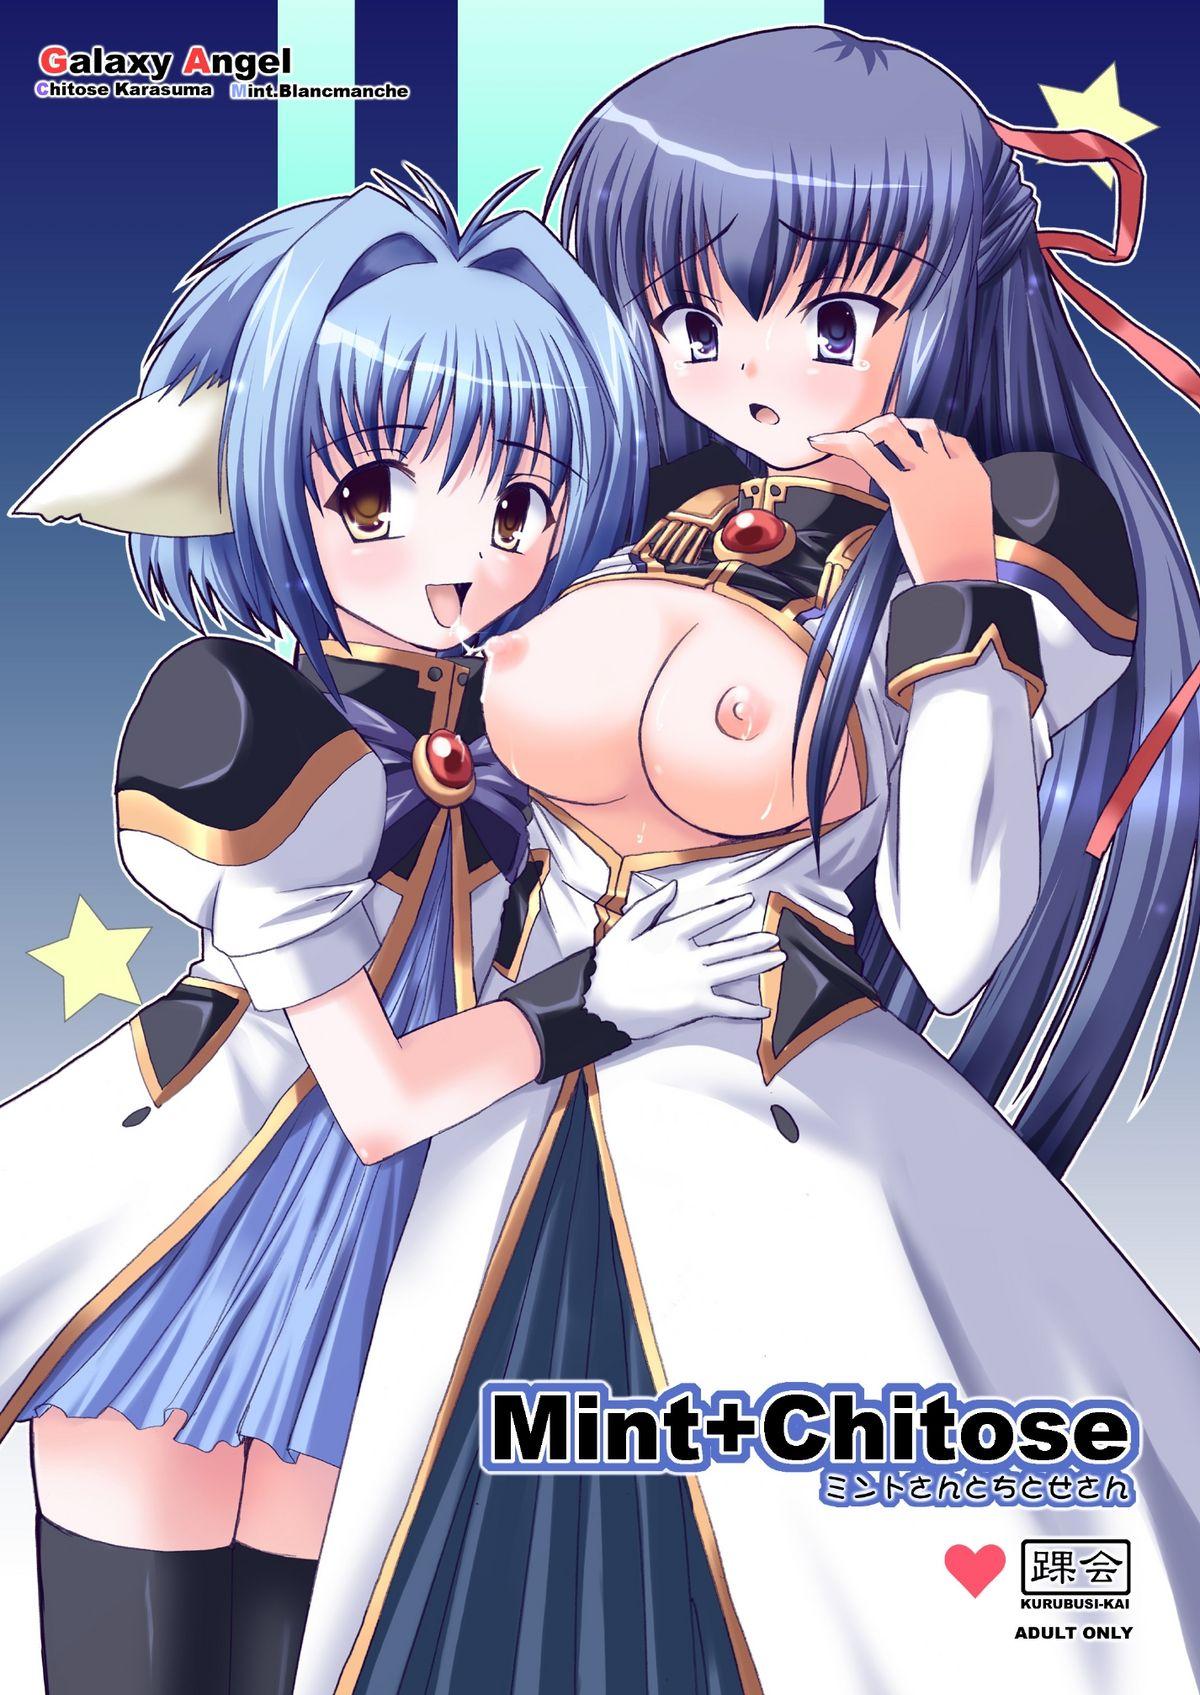 Mint+Chitose 0